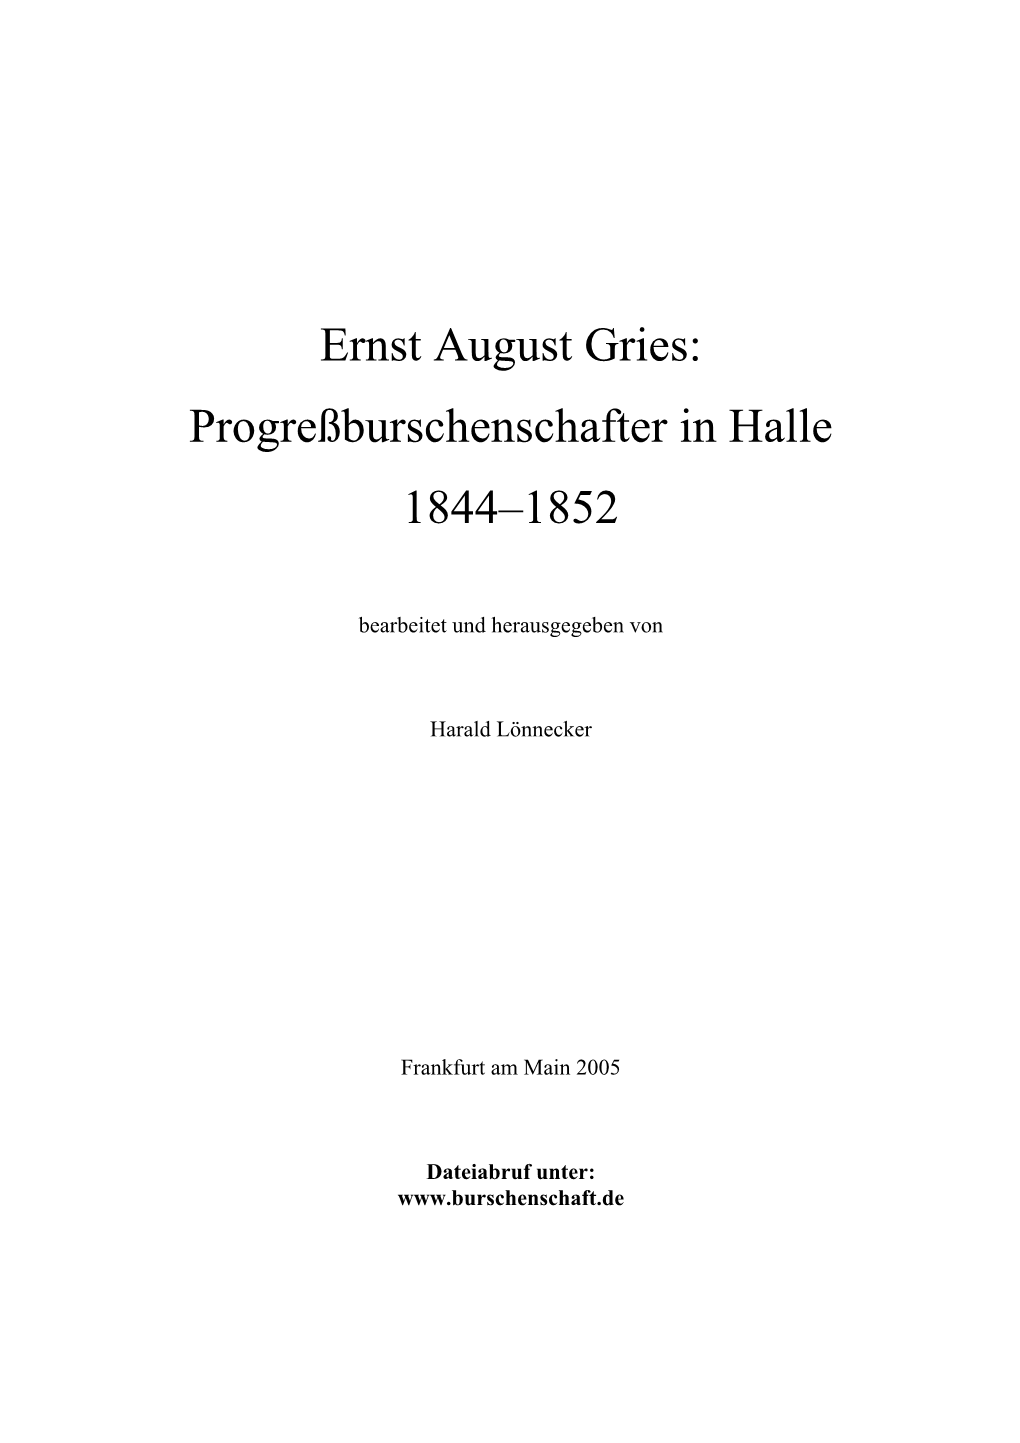 Ernst August Gries: Progreßburschenschafter in Halle 1844–1852